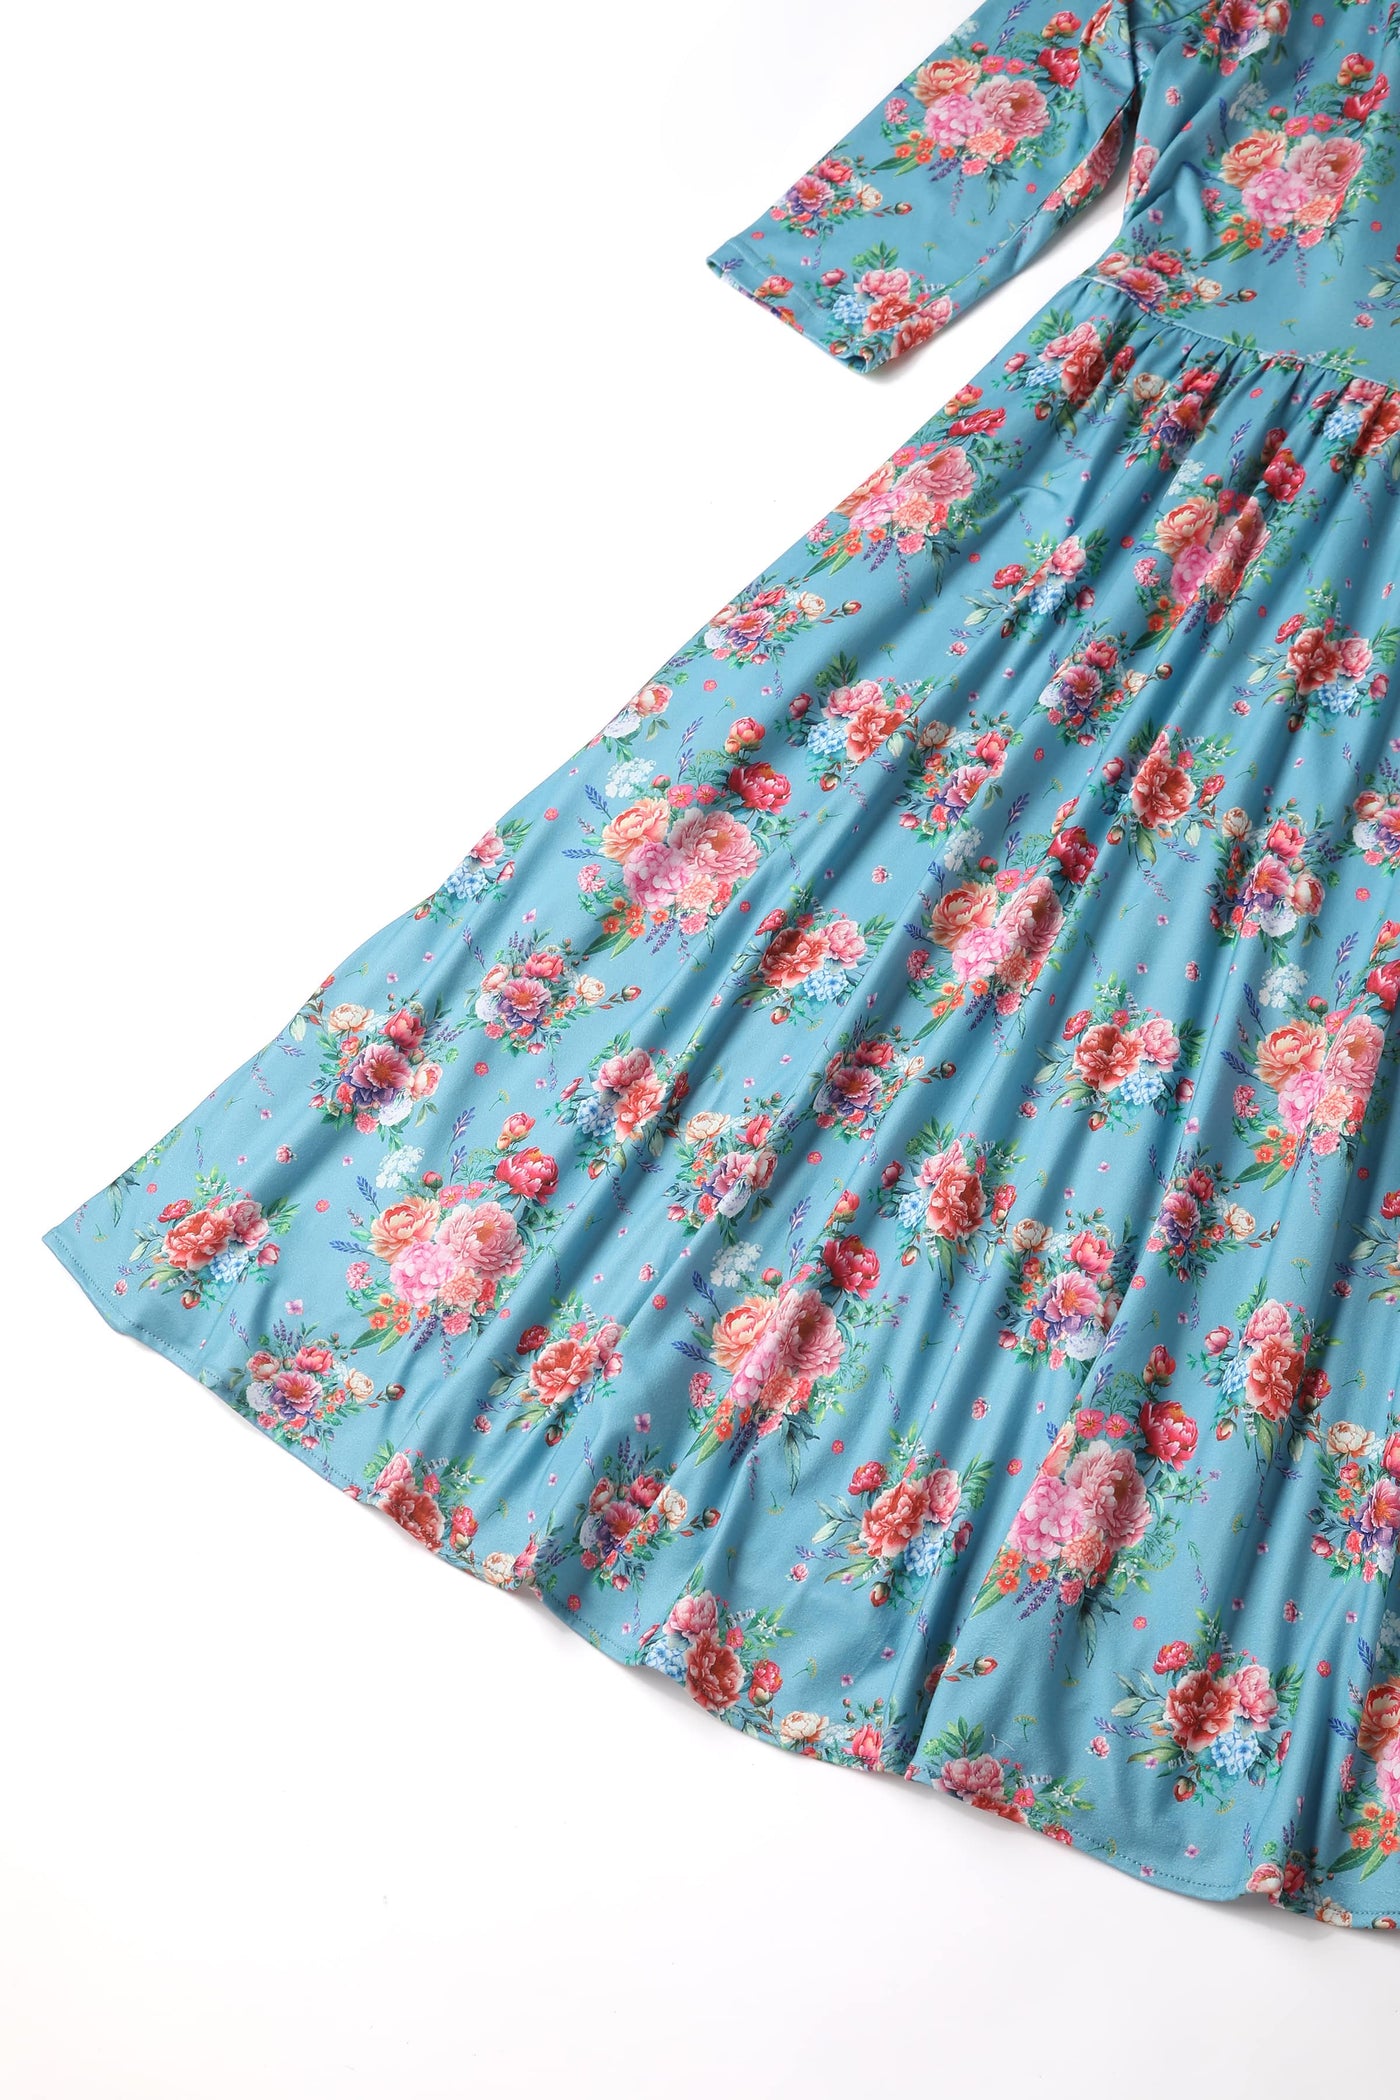 billie blue floral english garden dress skirt close up